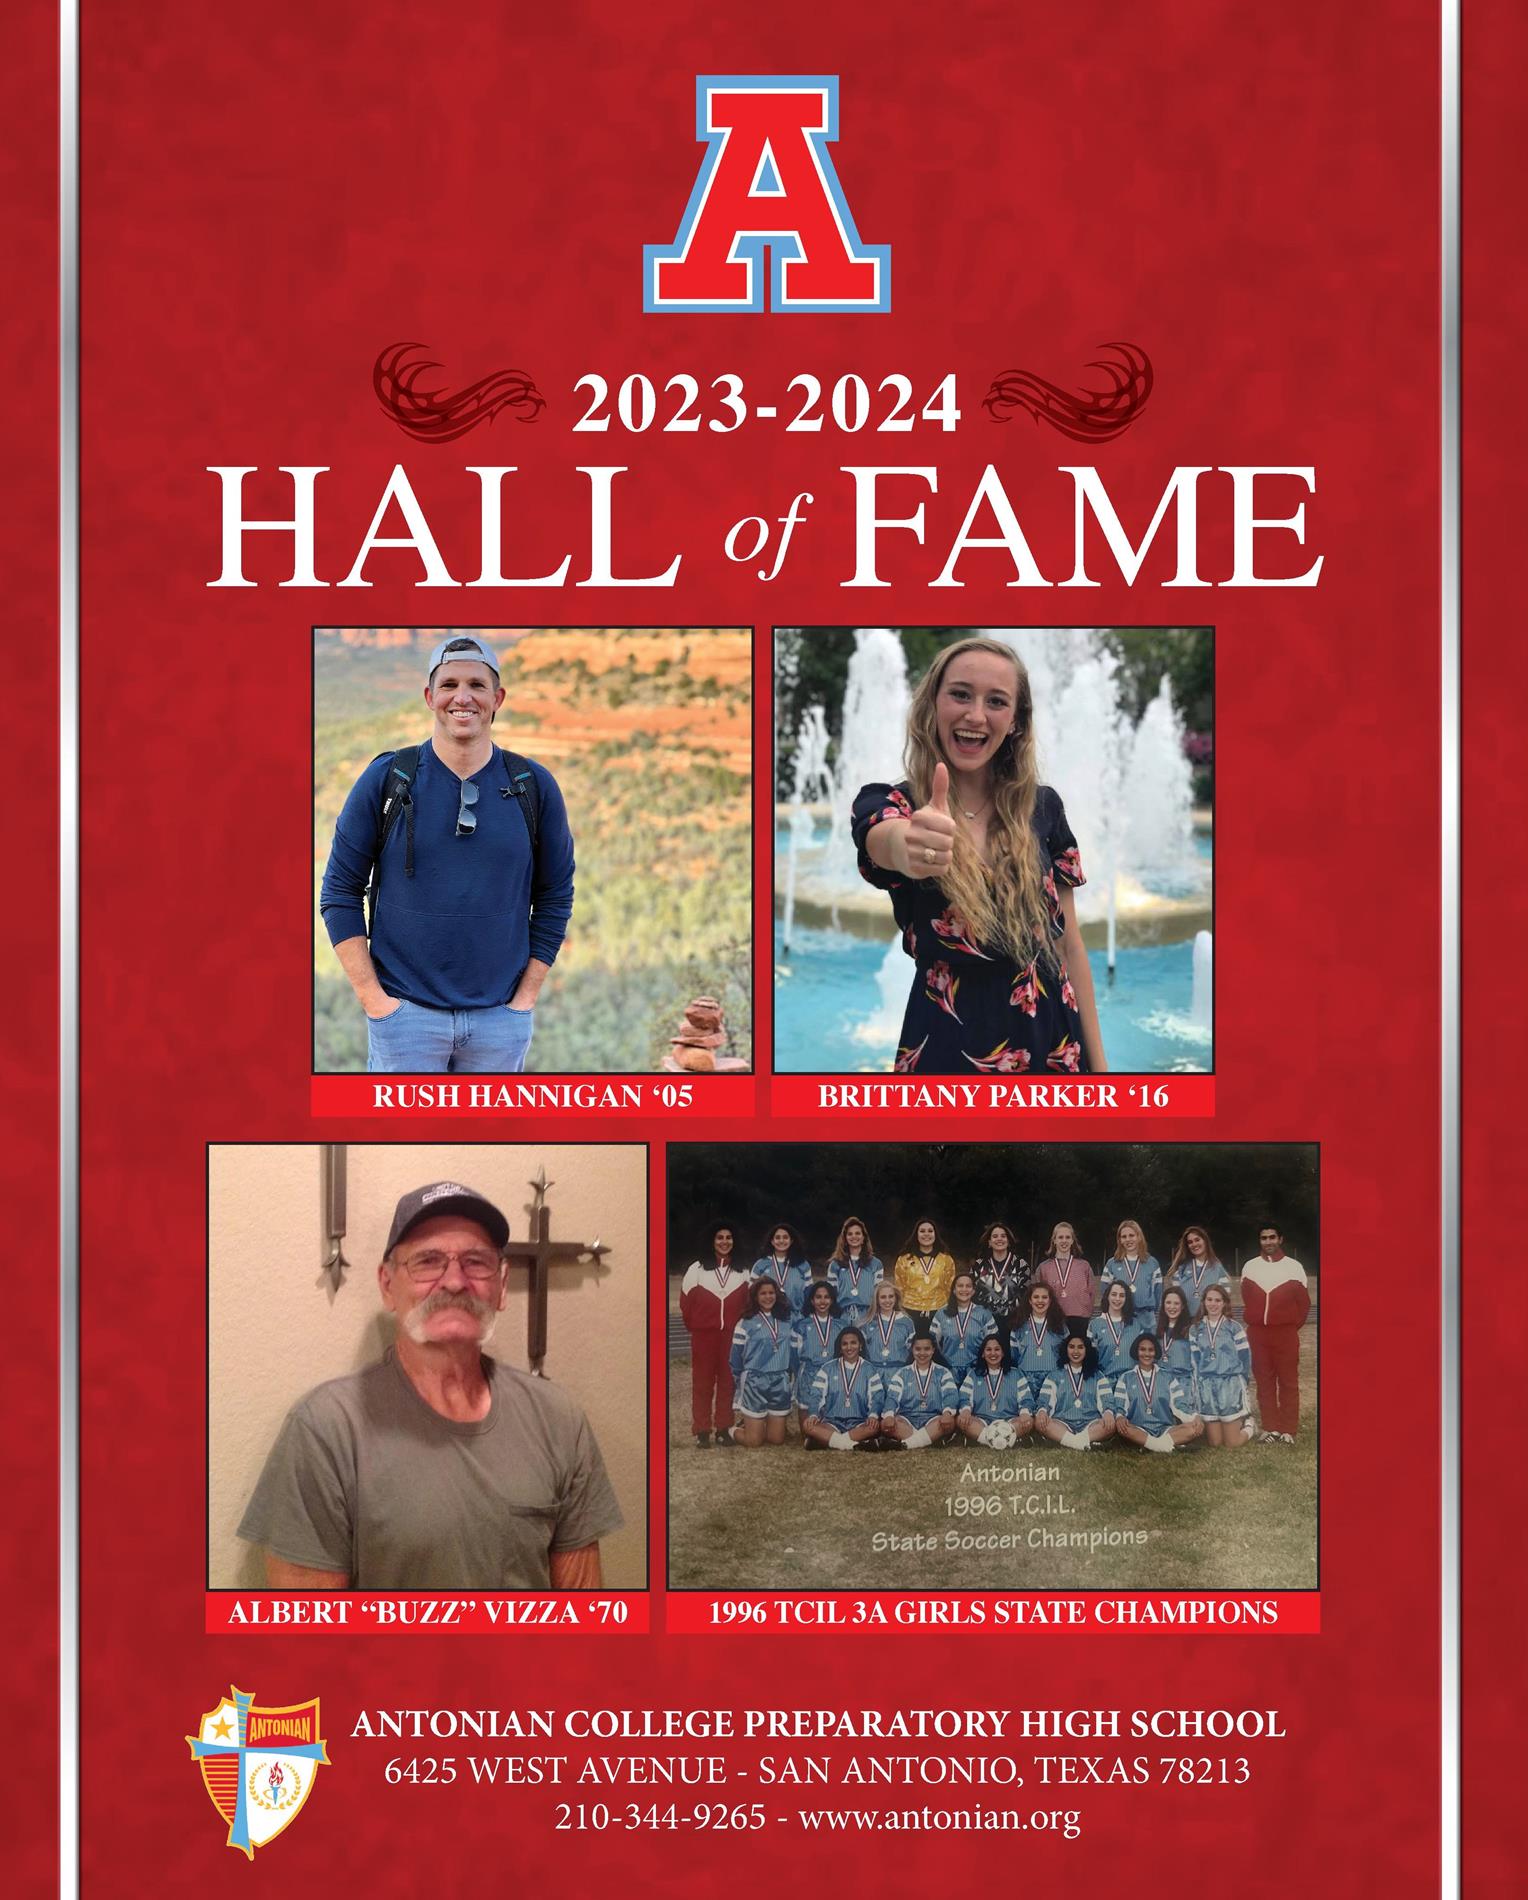 Hall of Fame 2023-2024